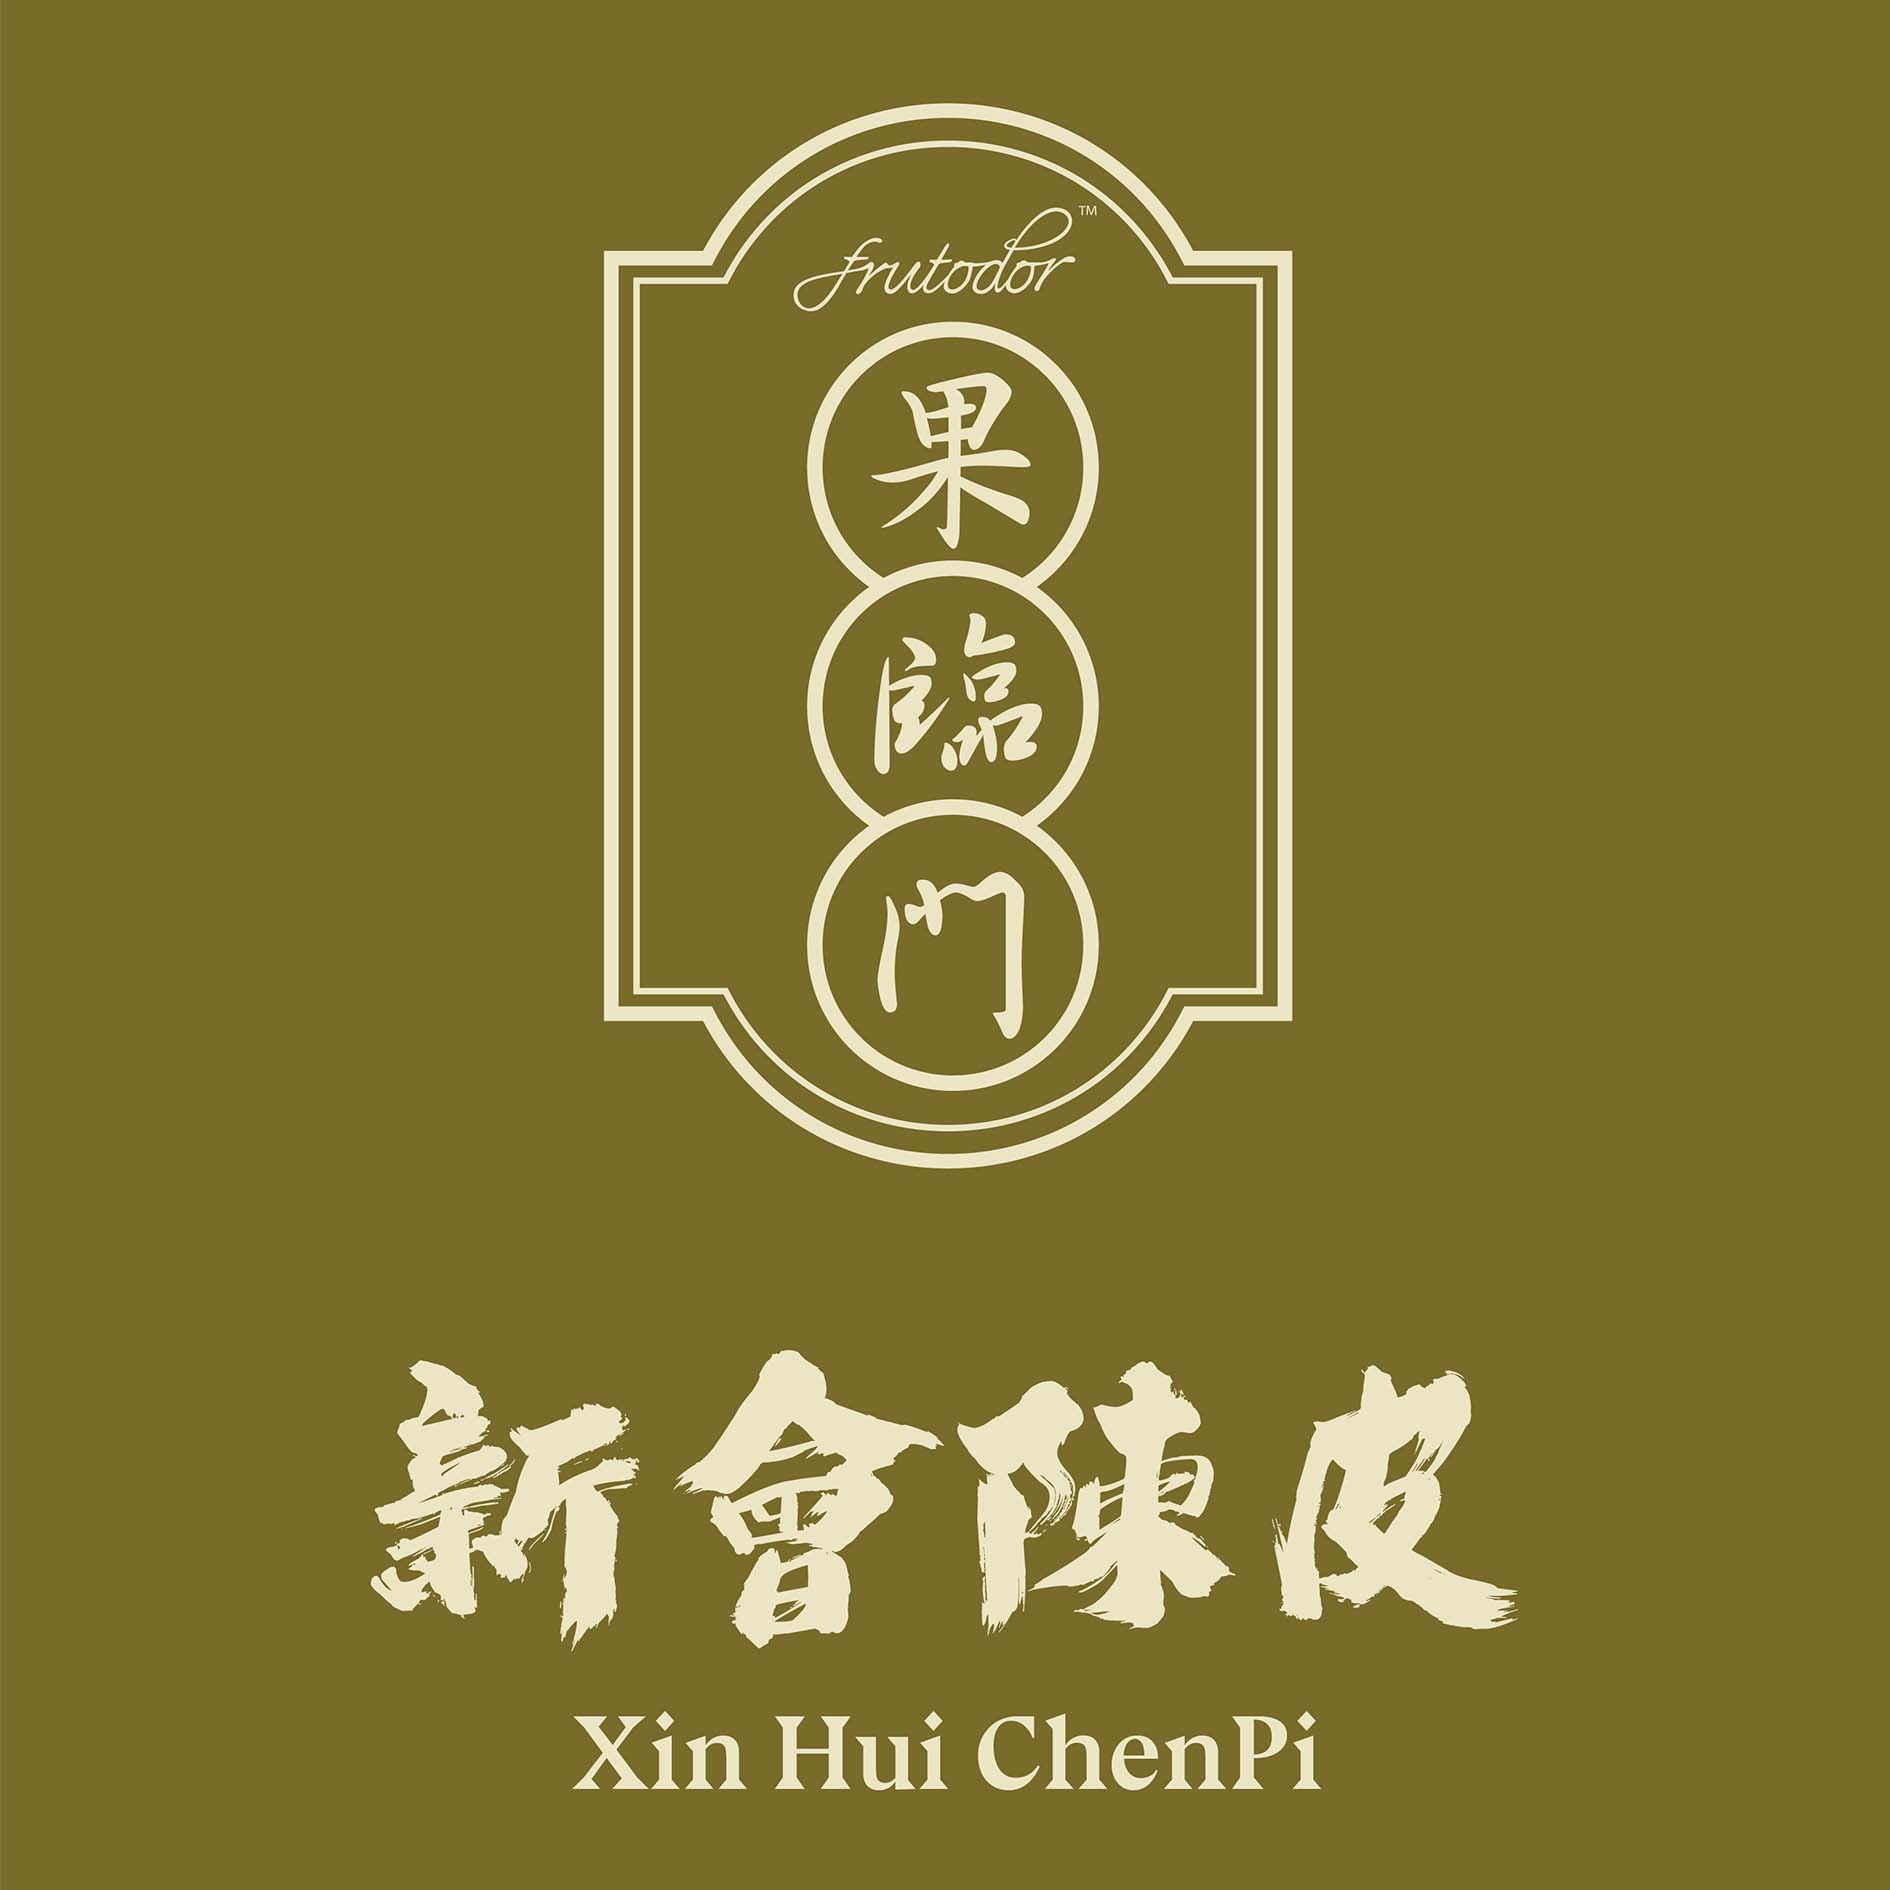 Frutodor Xin Hui ChenPi